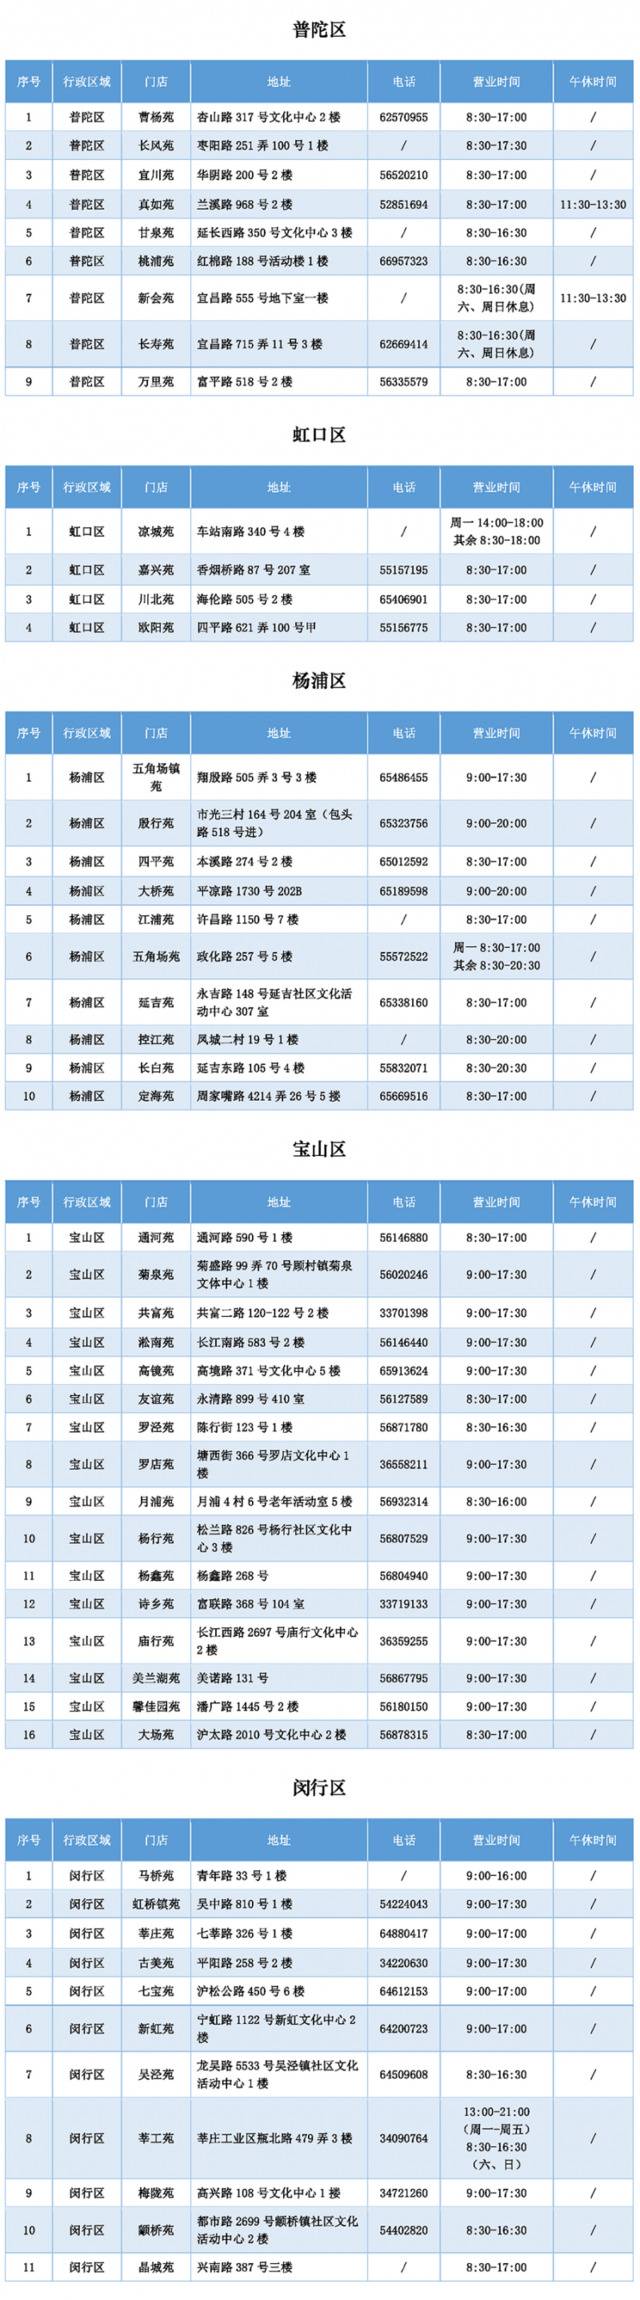 上海明天起开始幼儿园入园网上信息登记